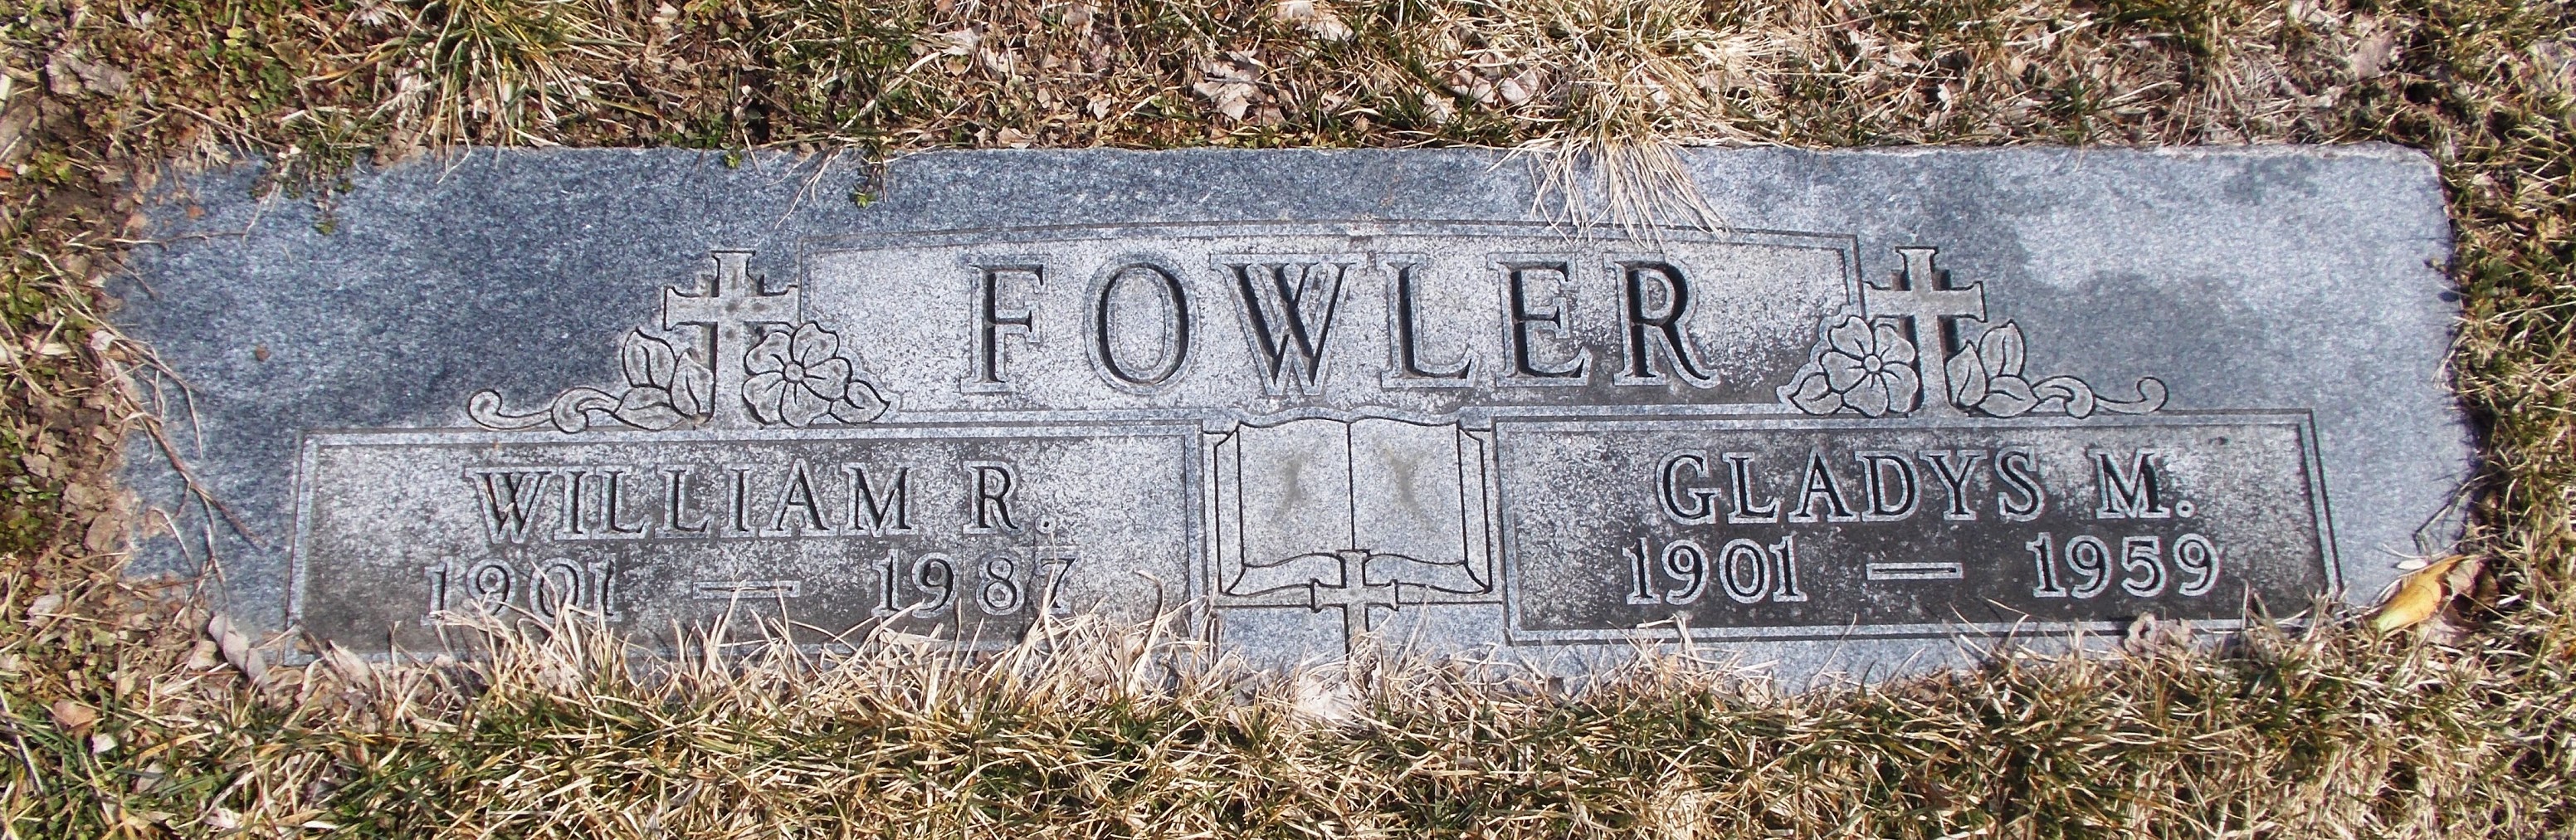 William R Fowler